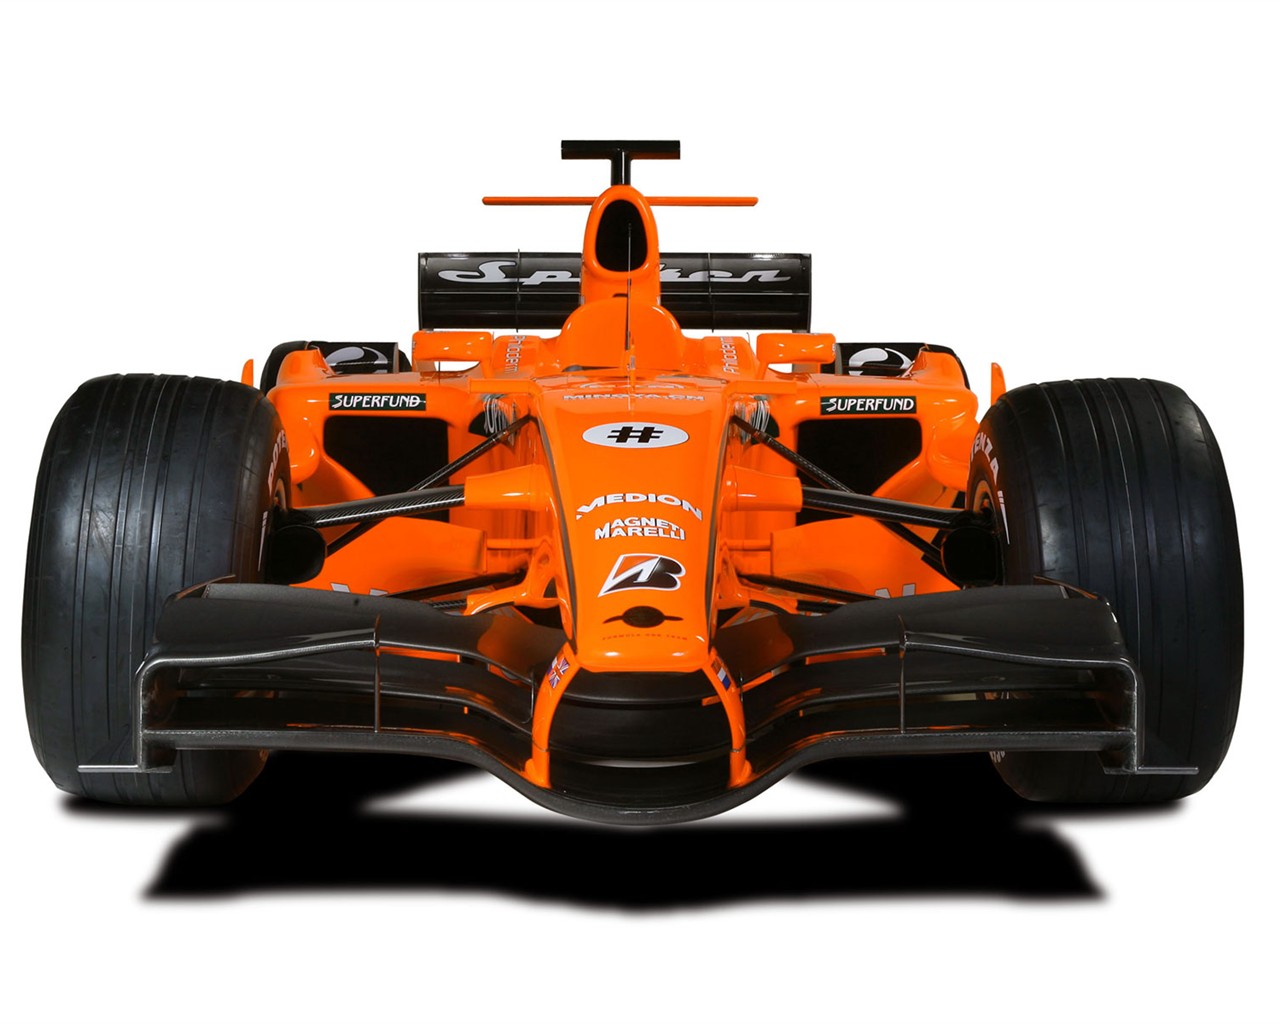  F1のレースのHD画像は、アルバム #20 - 1280x1024